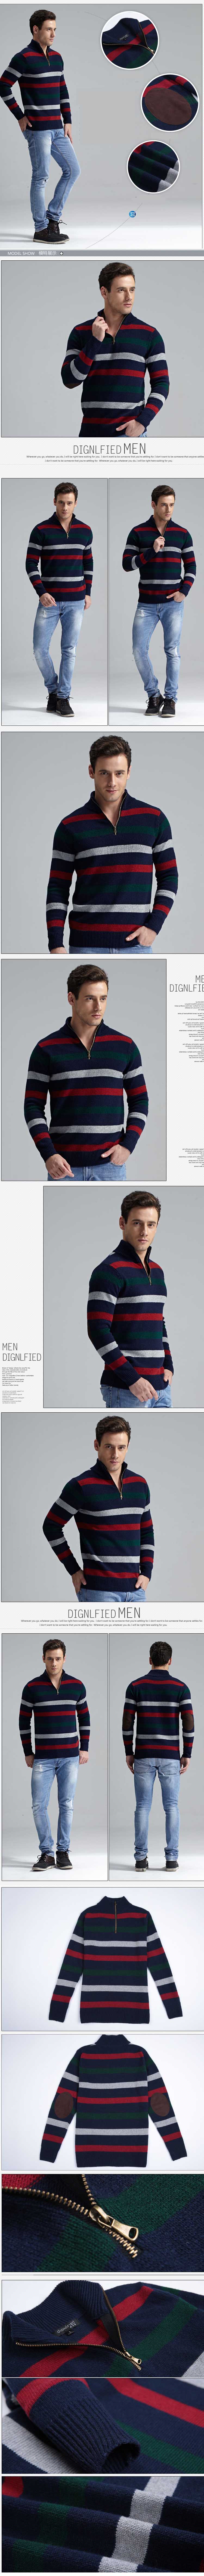 jual sweater rajut pria model terbaru penuh warna , temukan koleksi sweater rajut pria terbaru dan terlengkap hanya di store.pakaianfashionpria.com